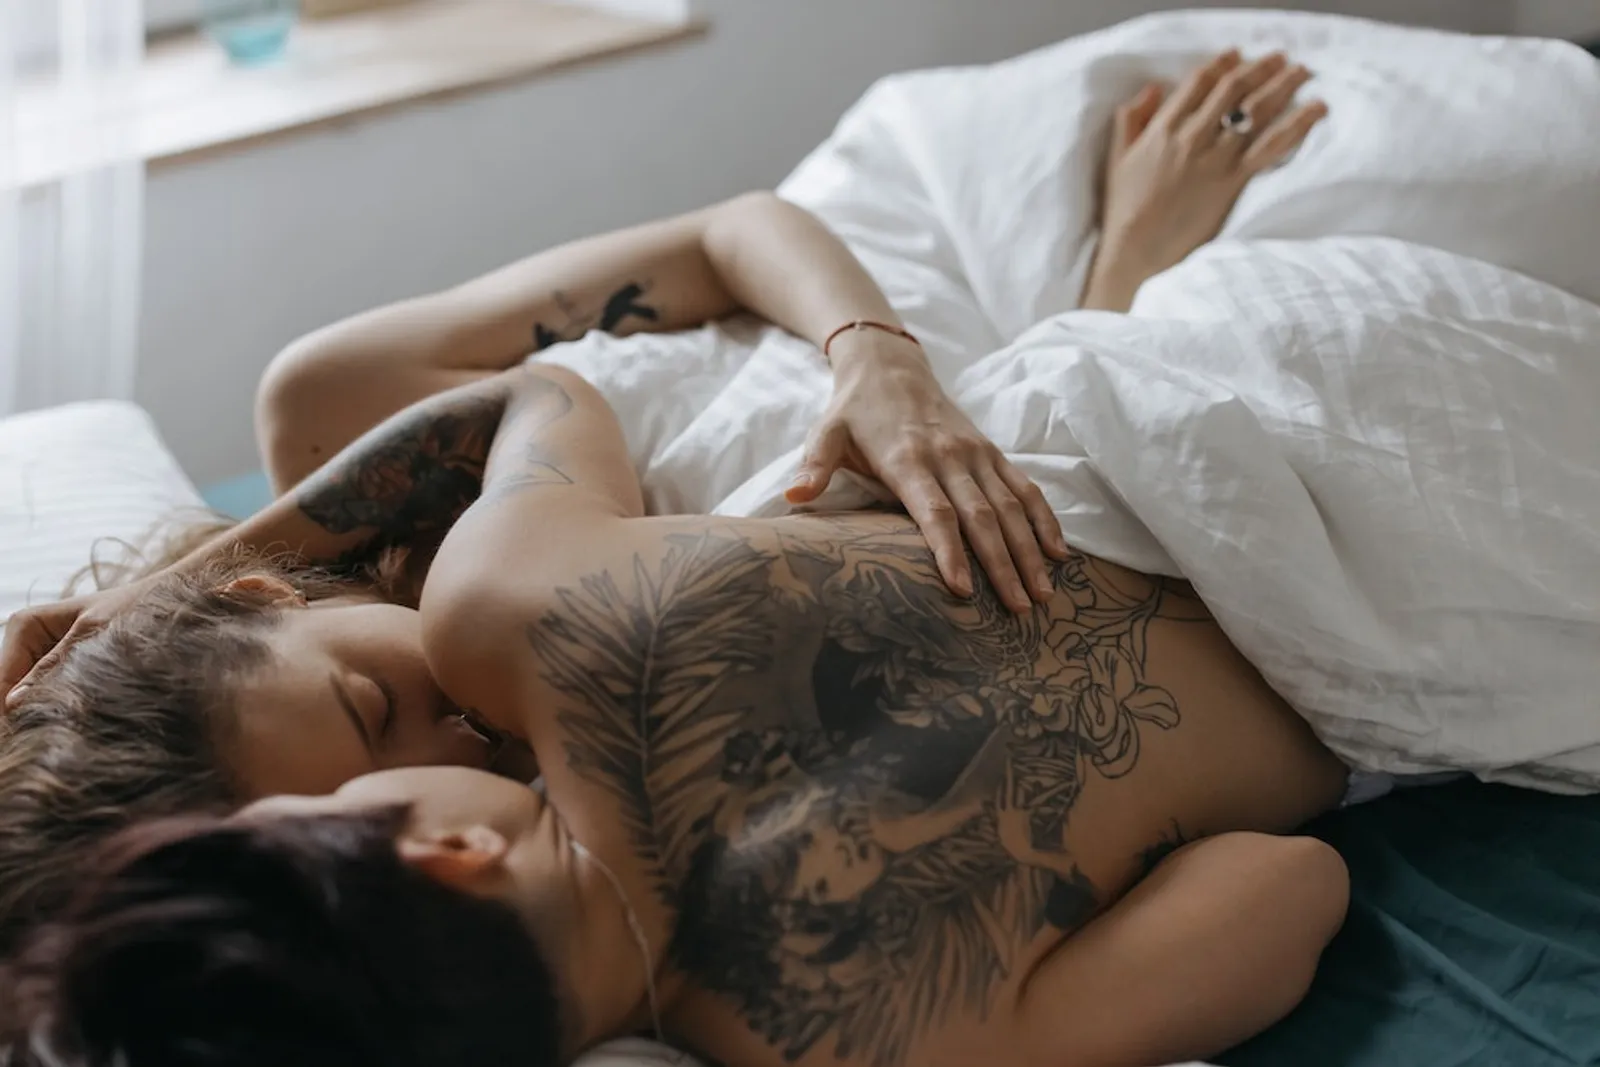 Tipe Sexting yang Disukai Setiap Zodiak, Bisa Dicoba Bareng Pasangan